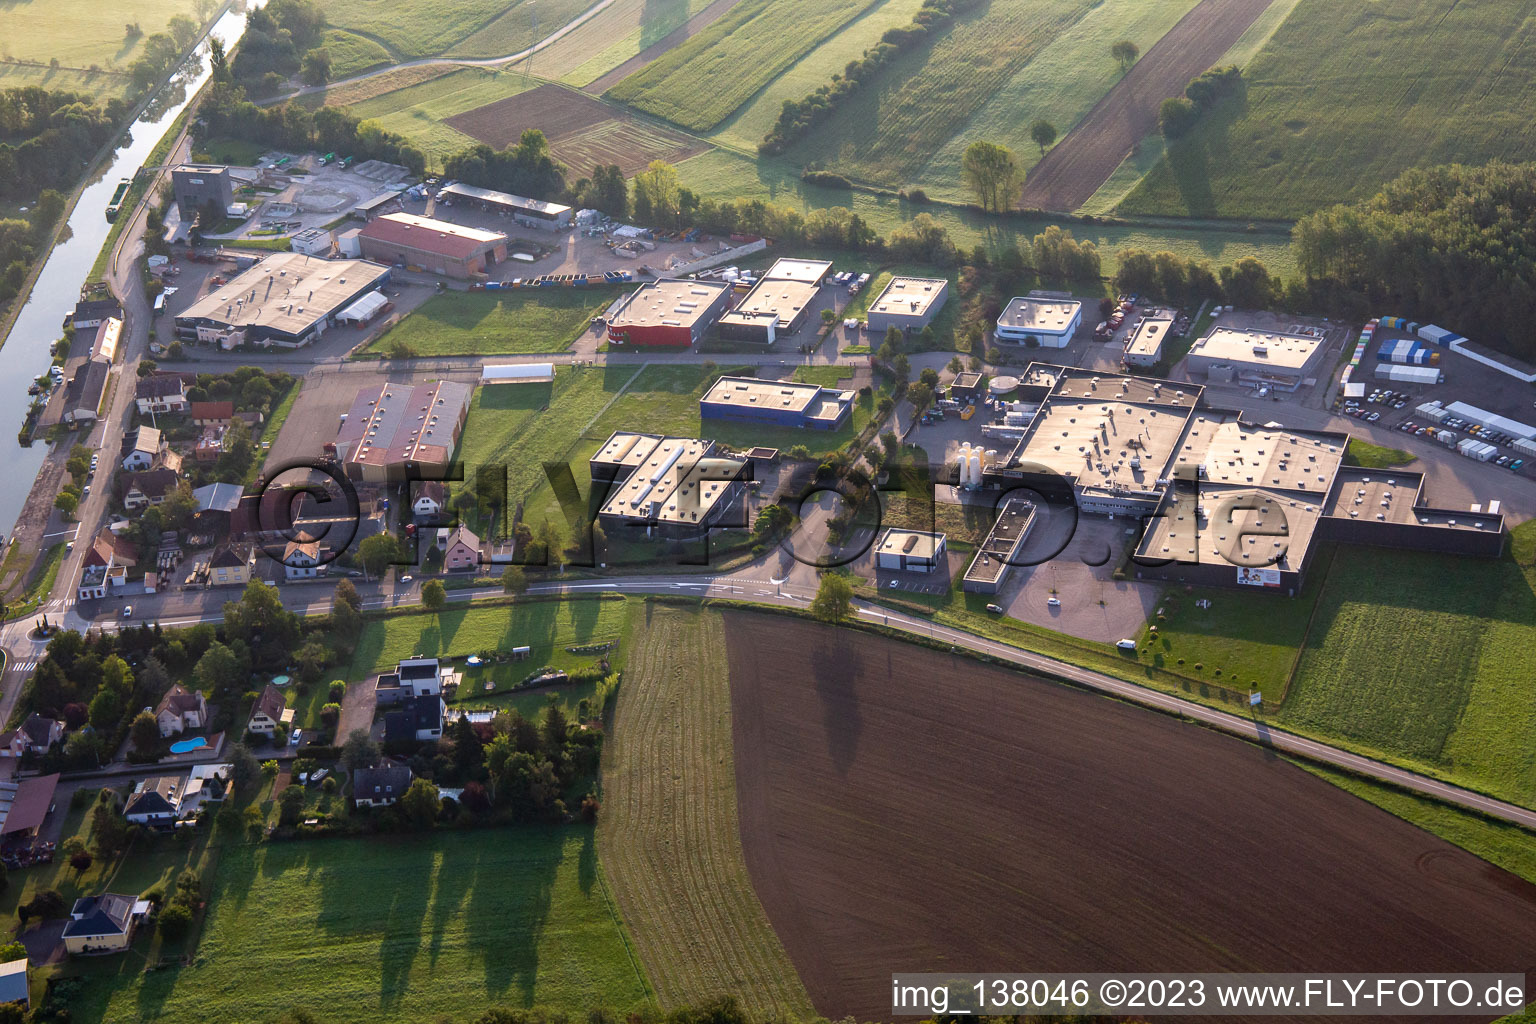 Industrial Estate in Hochfelden in the state Bas-Rhin, France